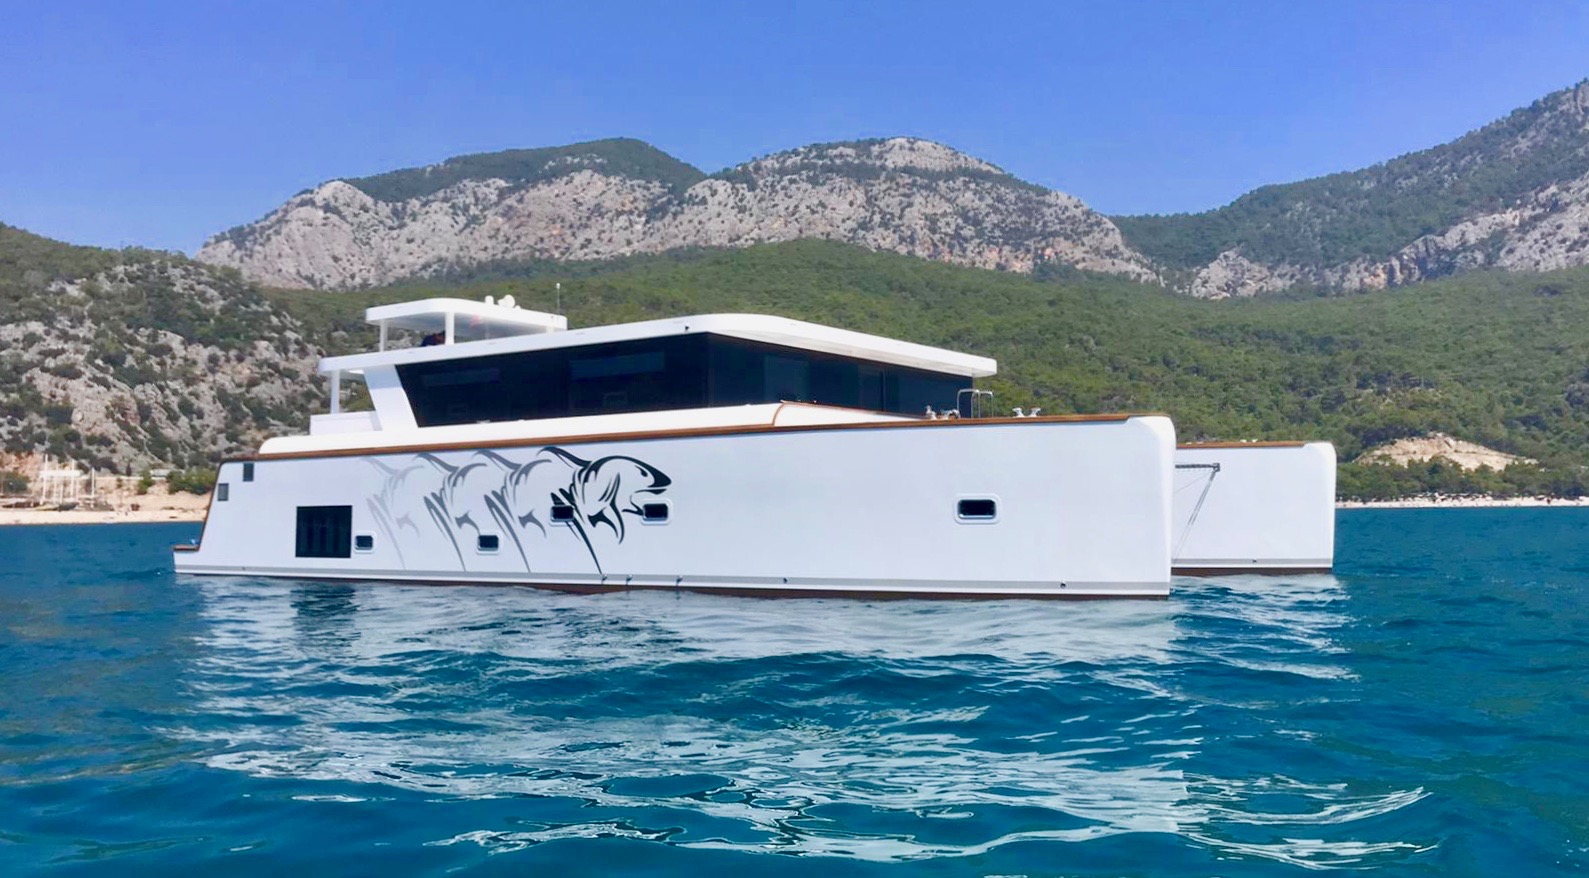 Catamarán EN CHARTER, de la marca Ocean Beast modelo 65 y del año 2020, disponible en Port dAndratx Andratx Mallorca España